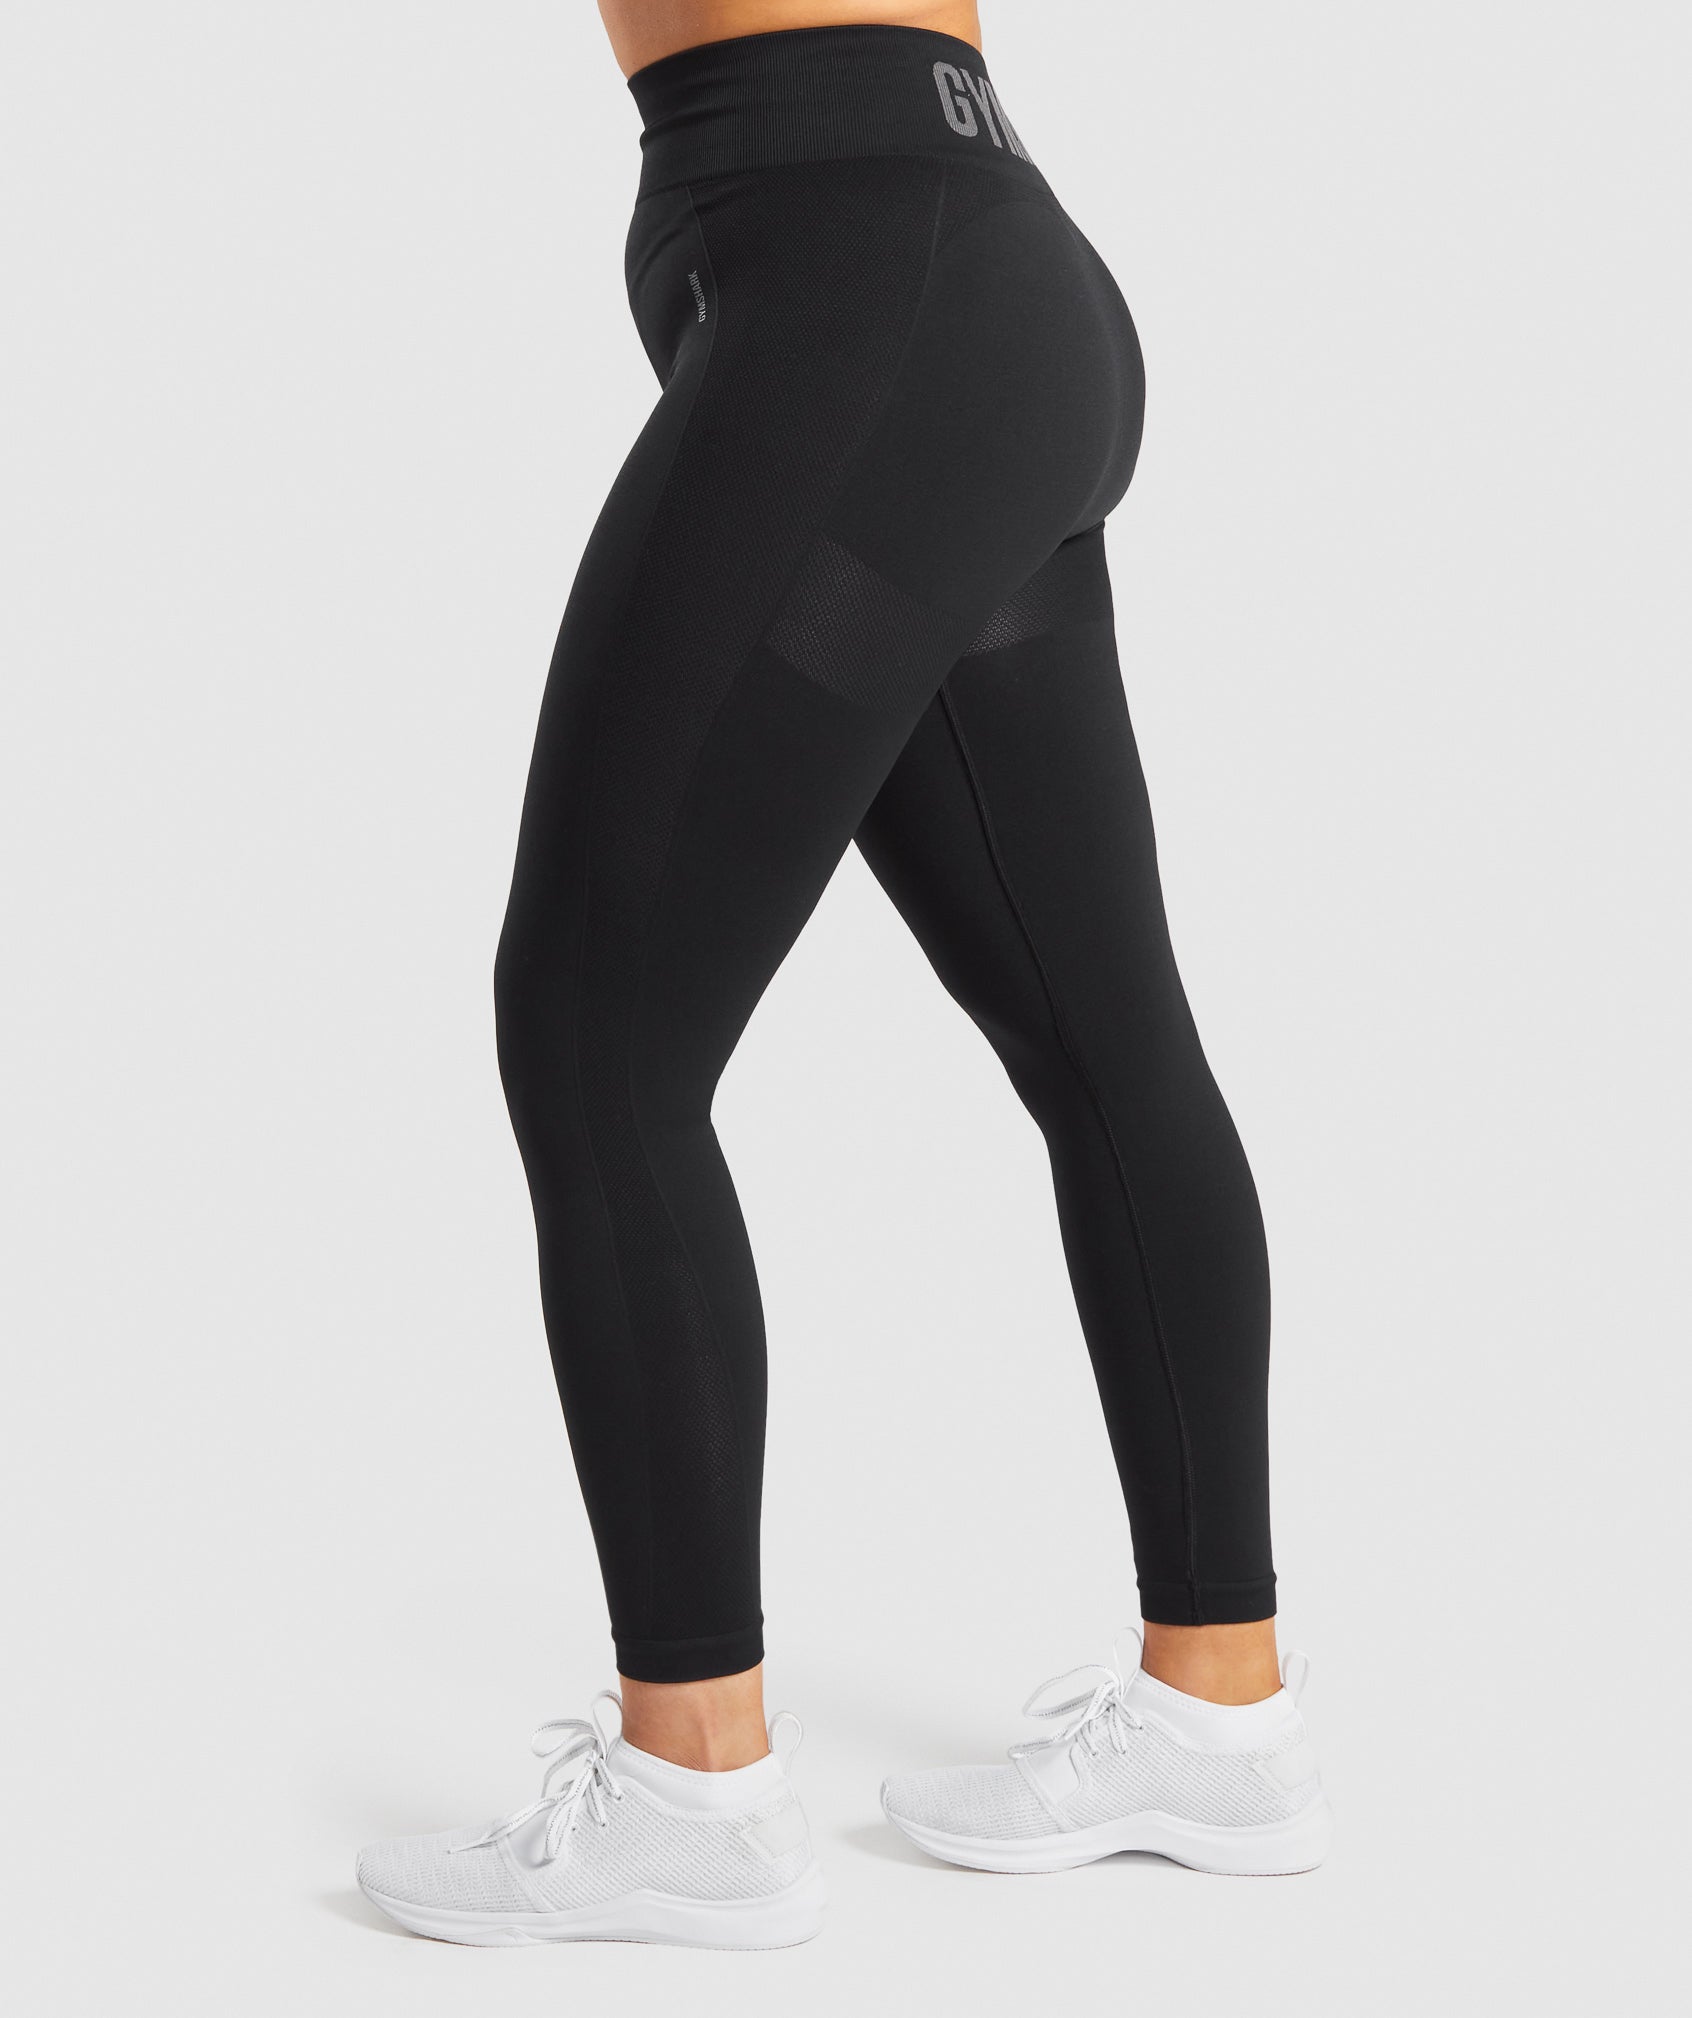 Gymshark Flex Leggings Review - Overhyped Or Amazing?  Gymshark flex  leggings, Flex leggings, High waisted leggings